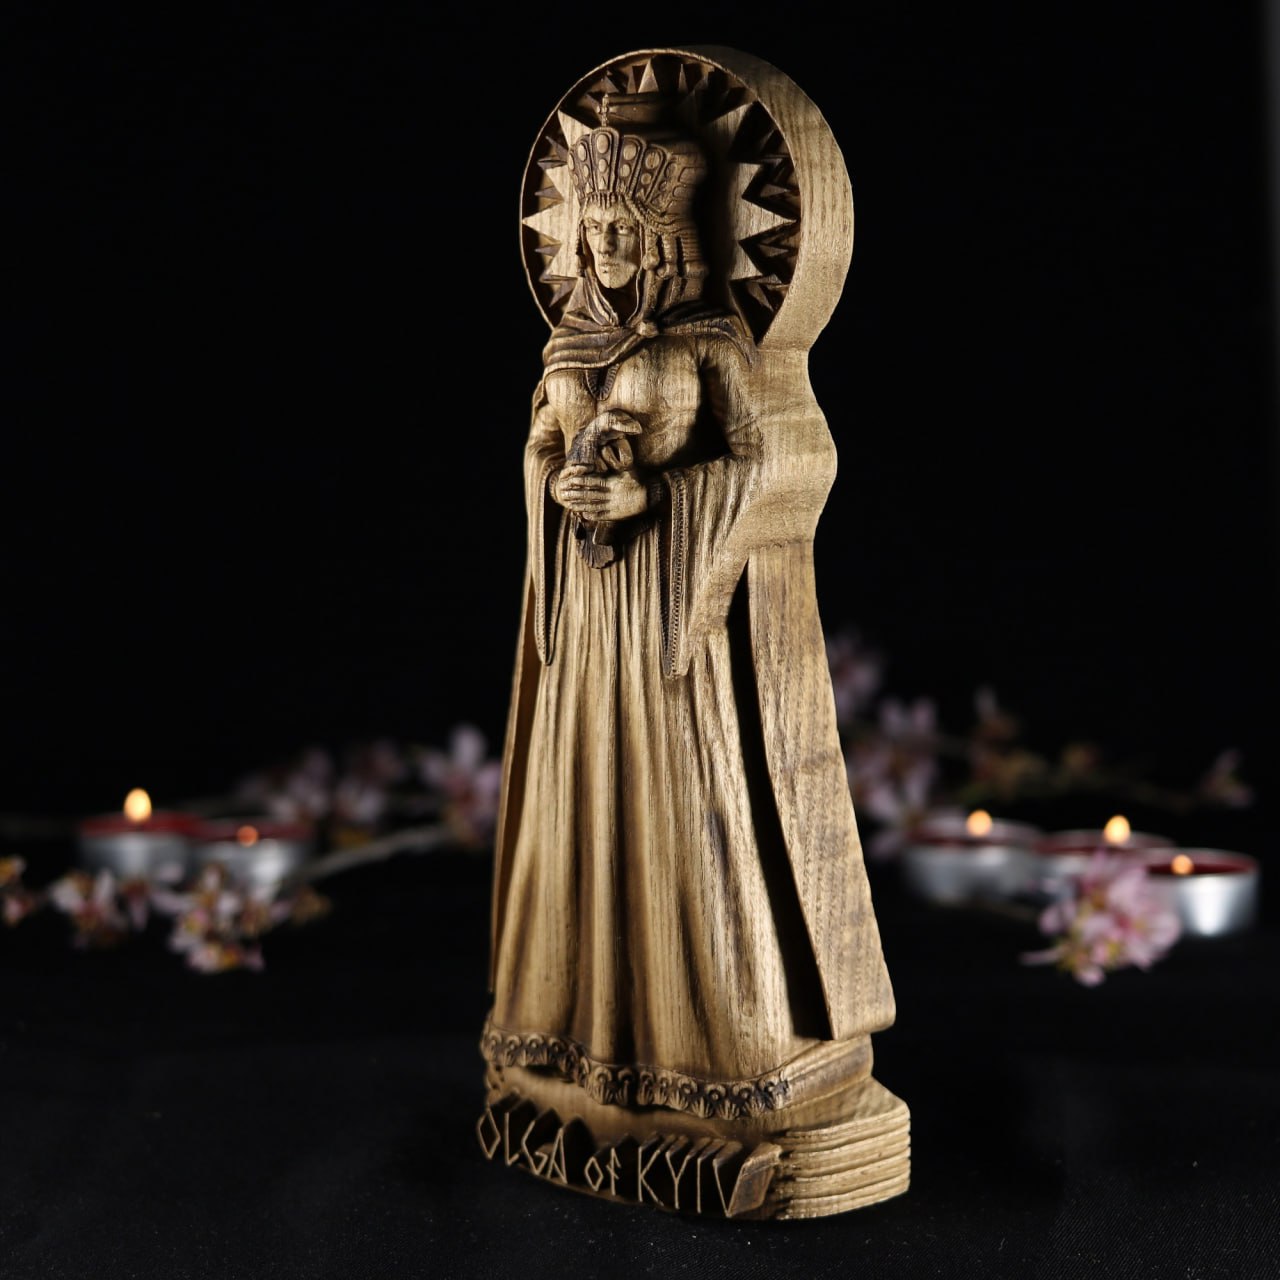 Saint Olga of Kiev - Wooden Kievan Rus' Statue